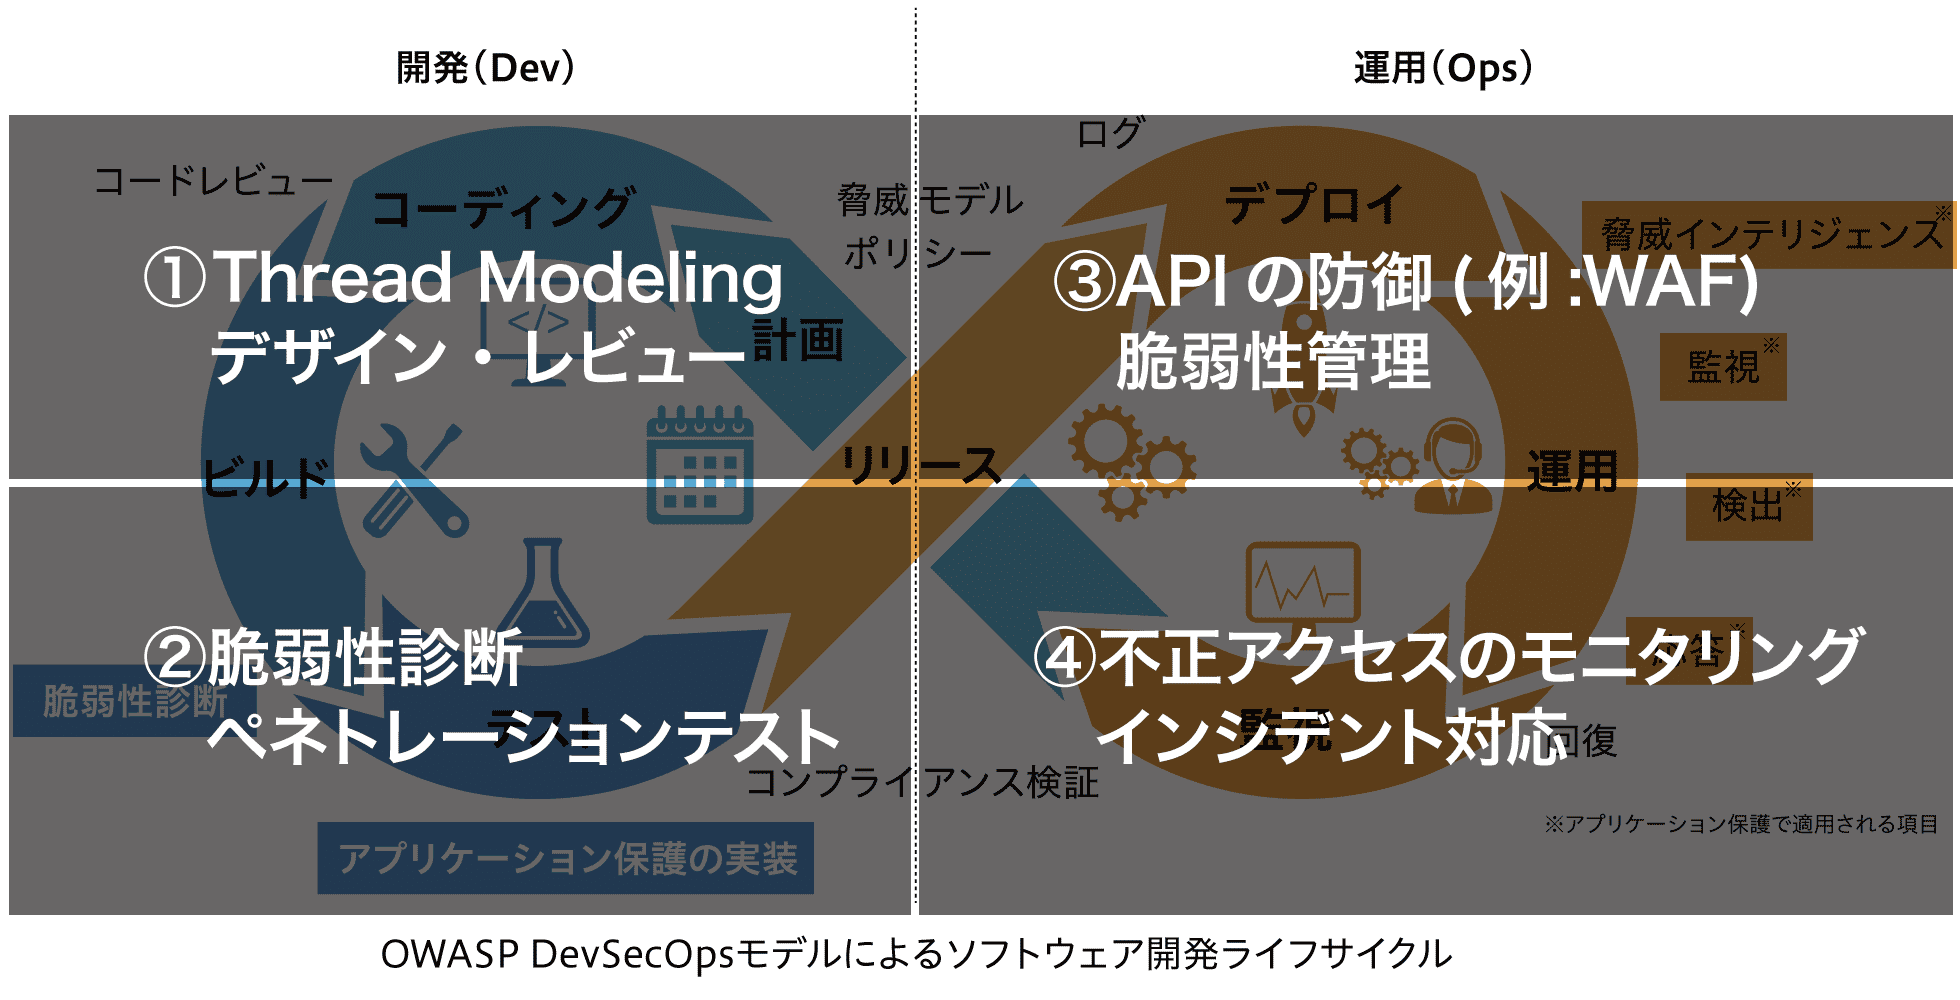 OWASP DevSecOpsモデルによるソフトウェア開発ライフサイクル